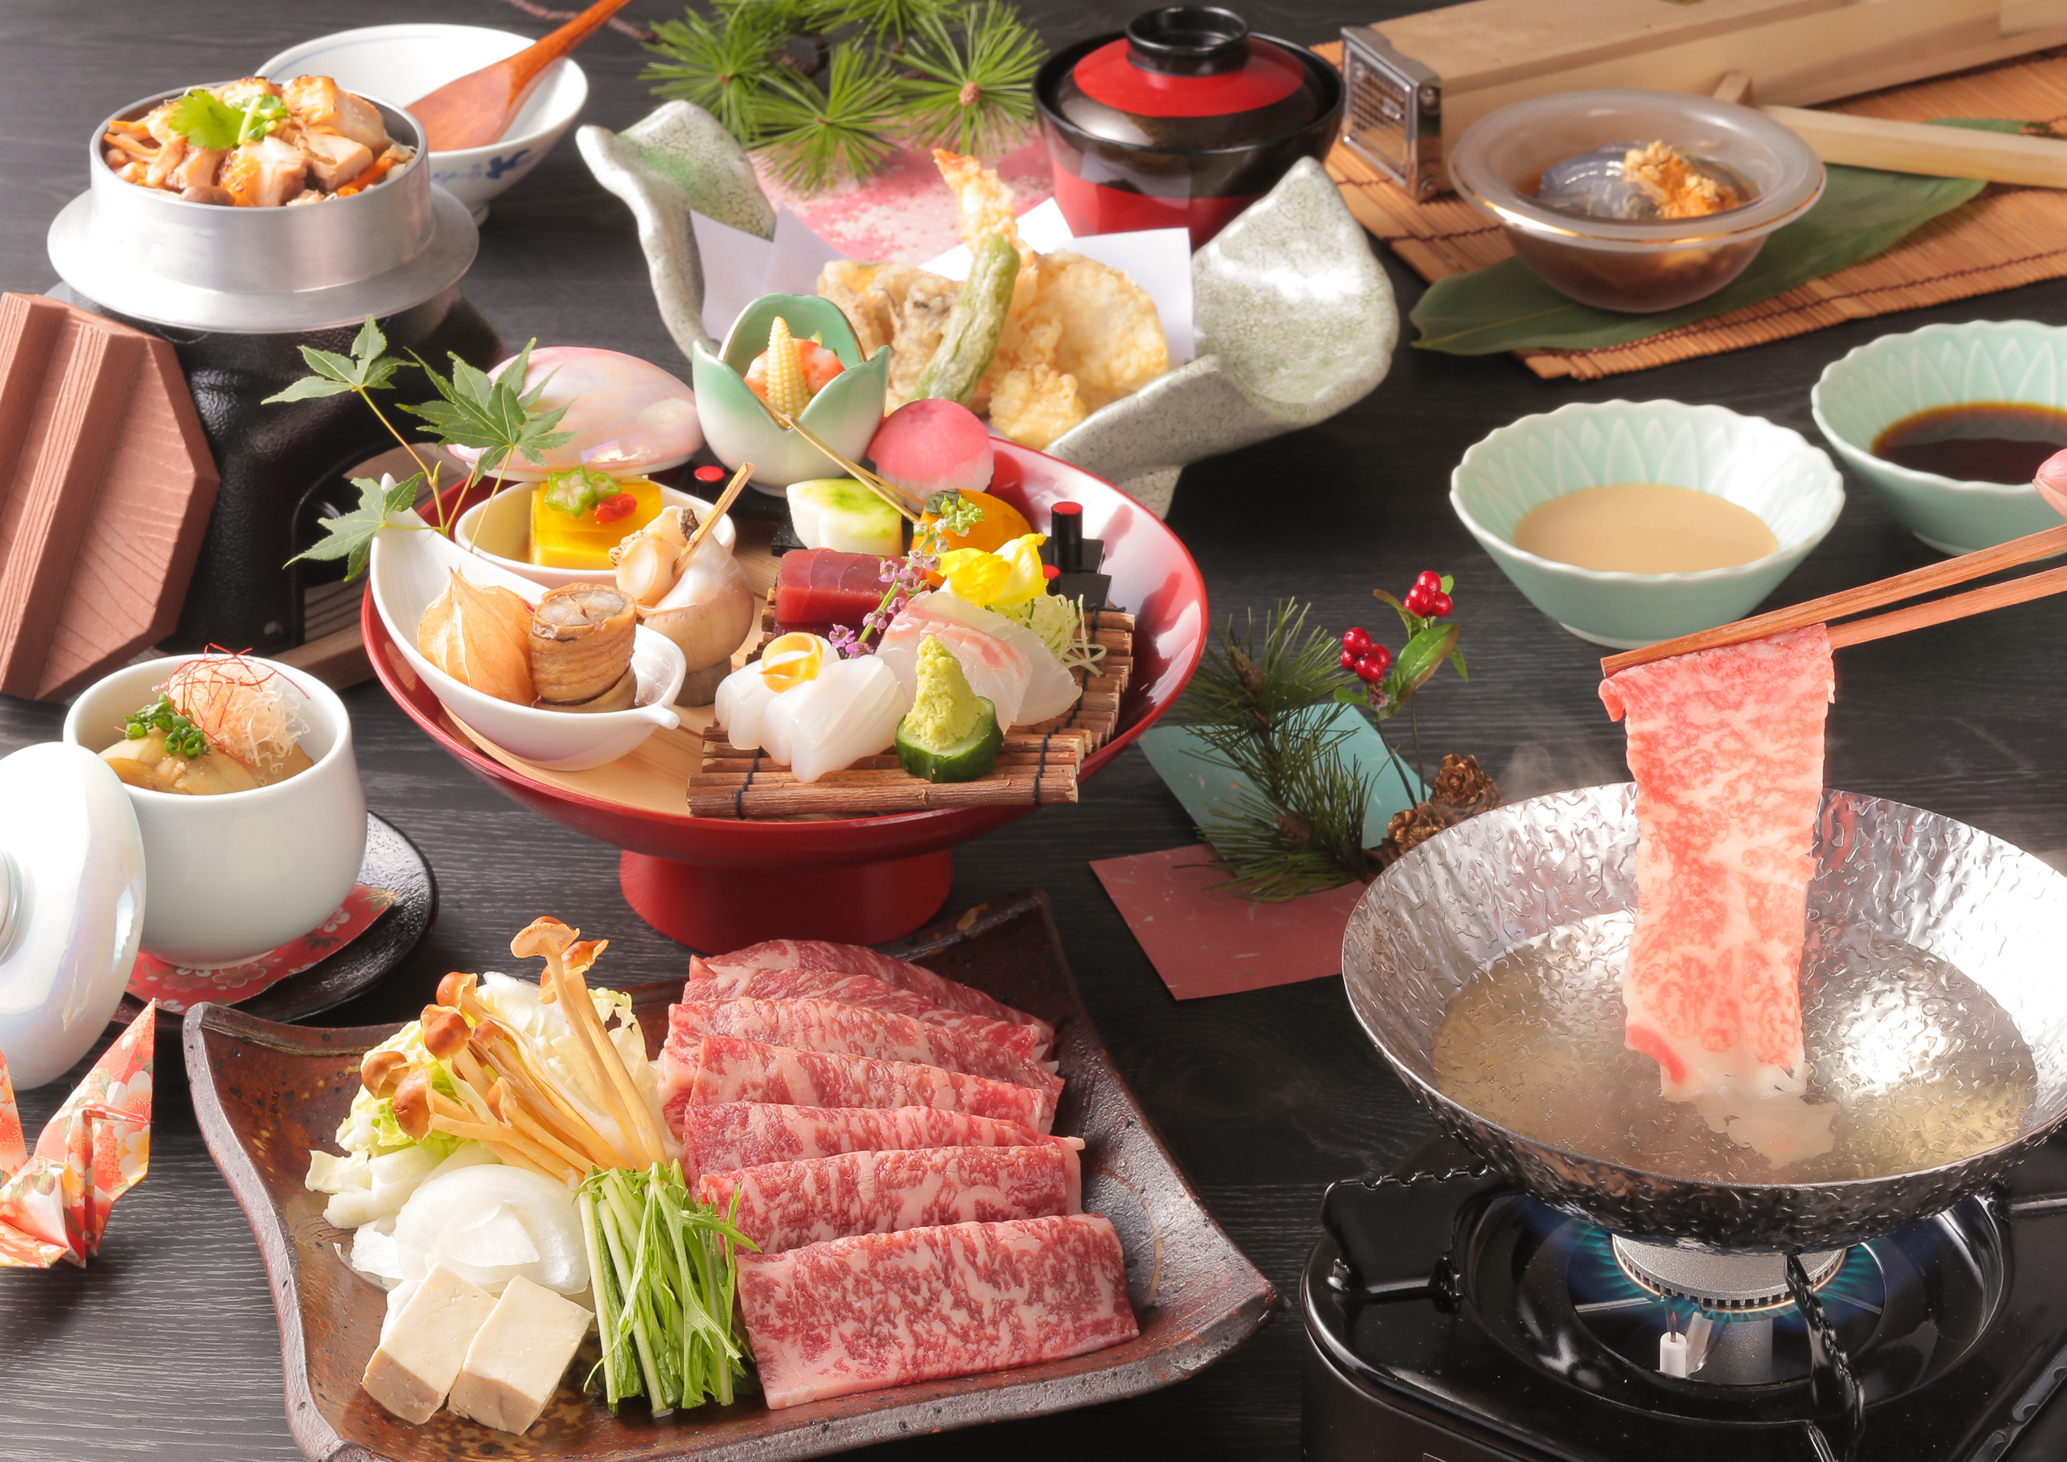 Сабу-сабу - блюдо из говядины, которое можно попробовать в ресторане «Оригами Асакуса» (Фотография предоставлена отелем «Фудзита Канко».)